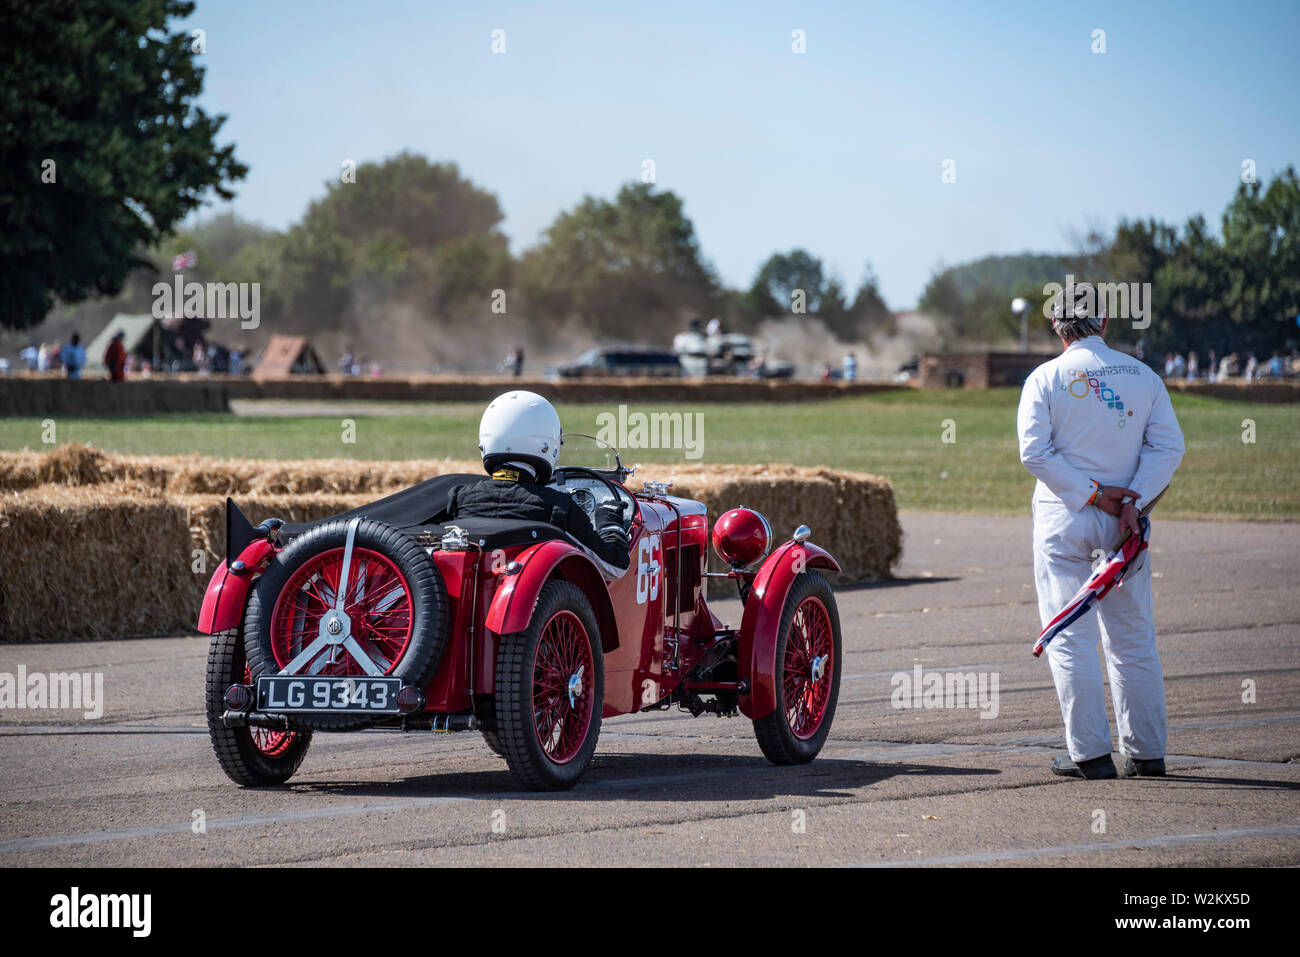 1932 MG J2 Supercharger racing voiture attend pour lancer une exposition à la tour de volant, 2018 Festival du patrimoine de Bicester Banque D'Images